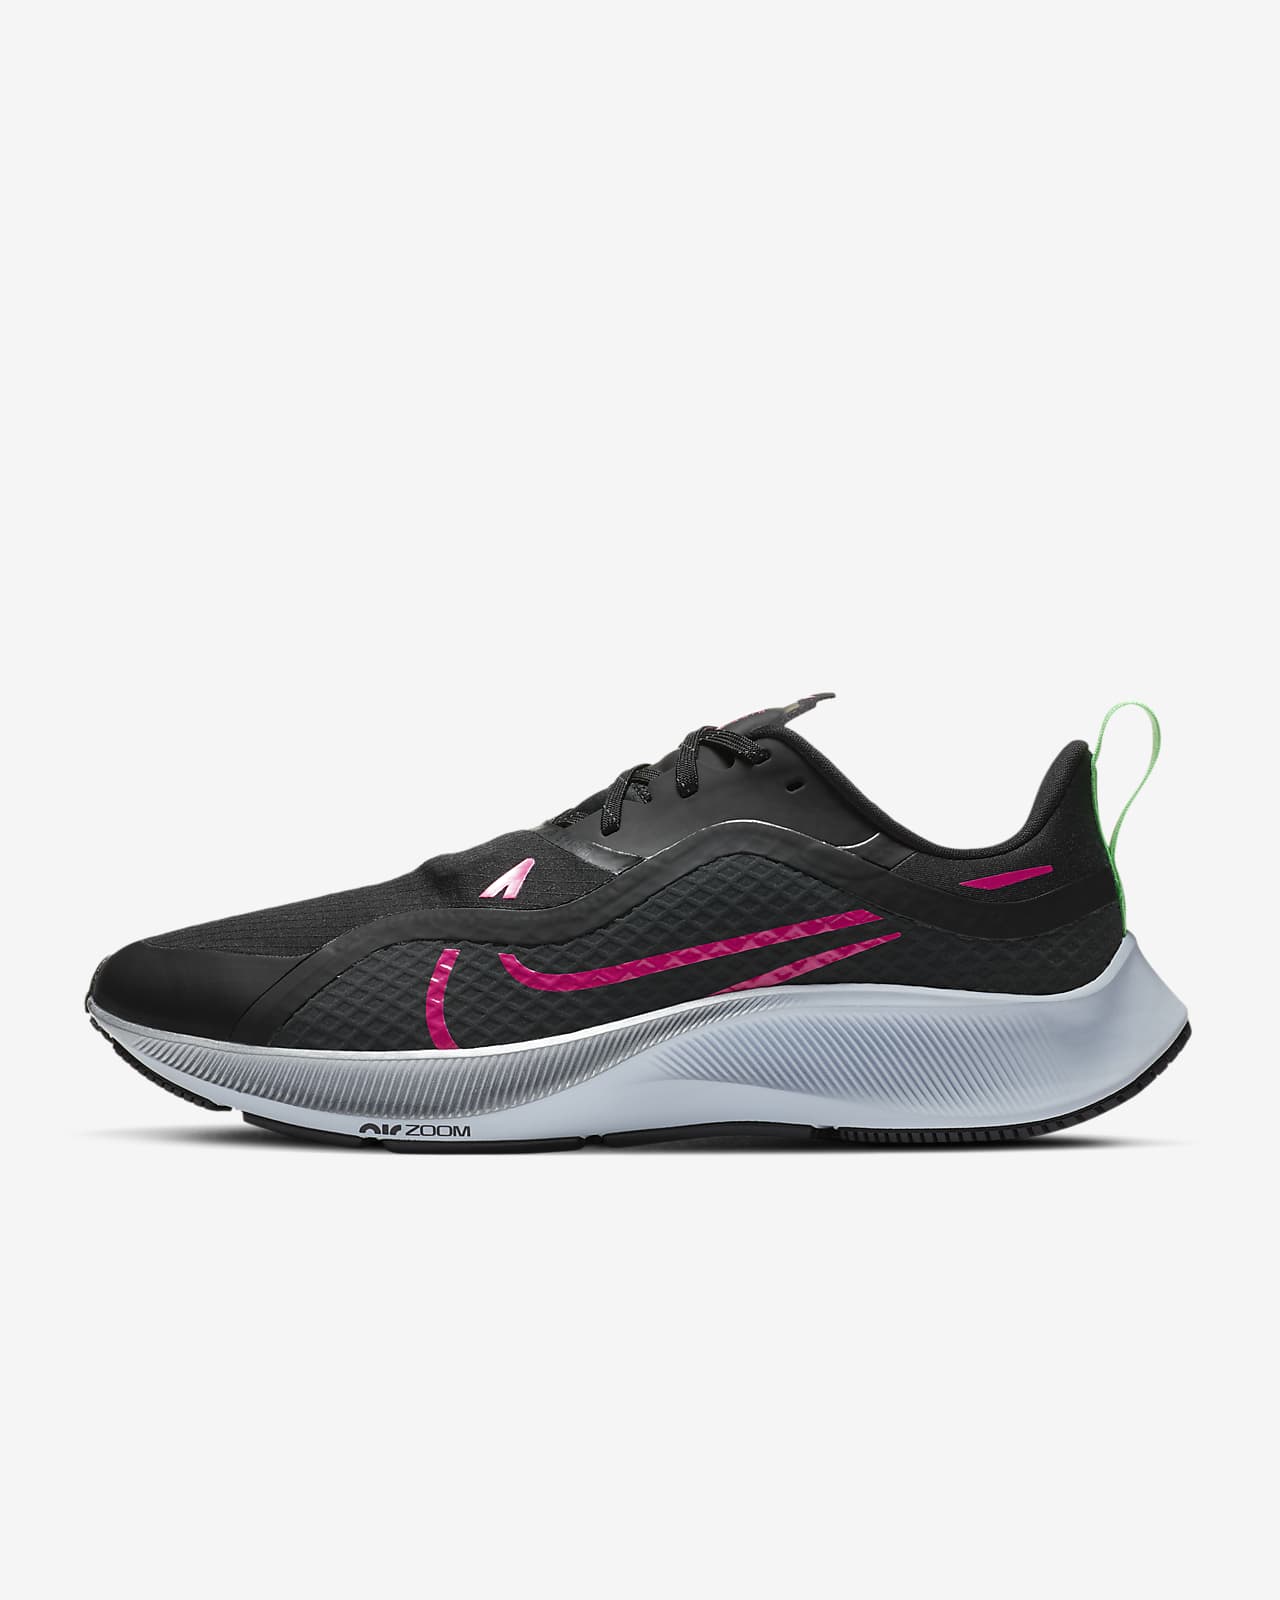 Nike Air Zoom Pegasus 37 Shield âBlack / Pink Blastâ $71.97 Free Shipping â Sneaker Steal